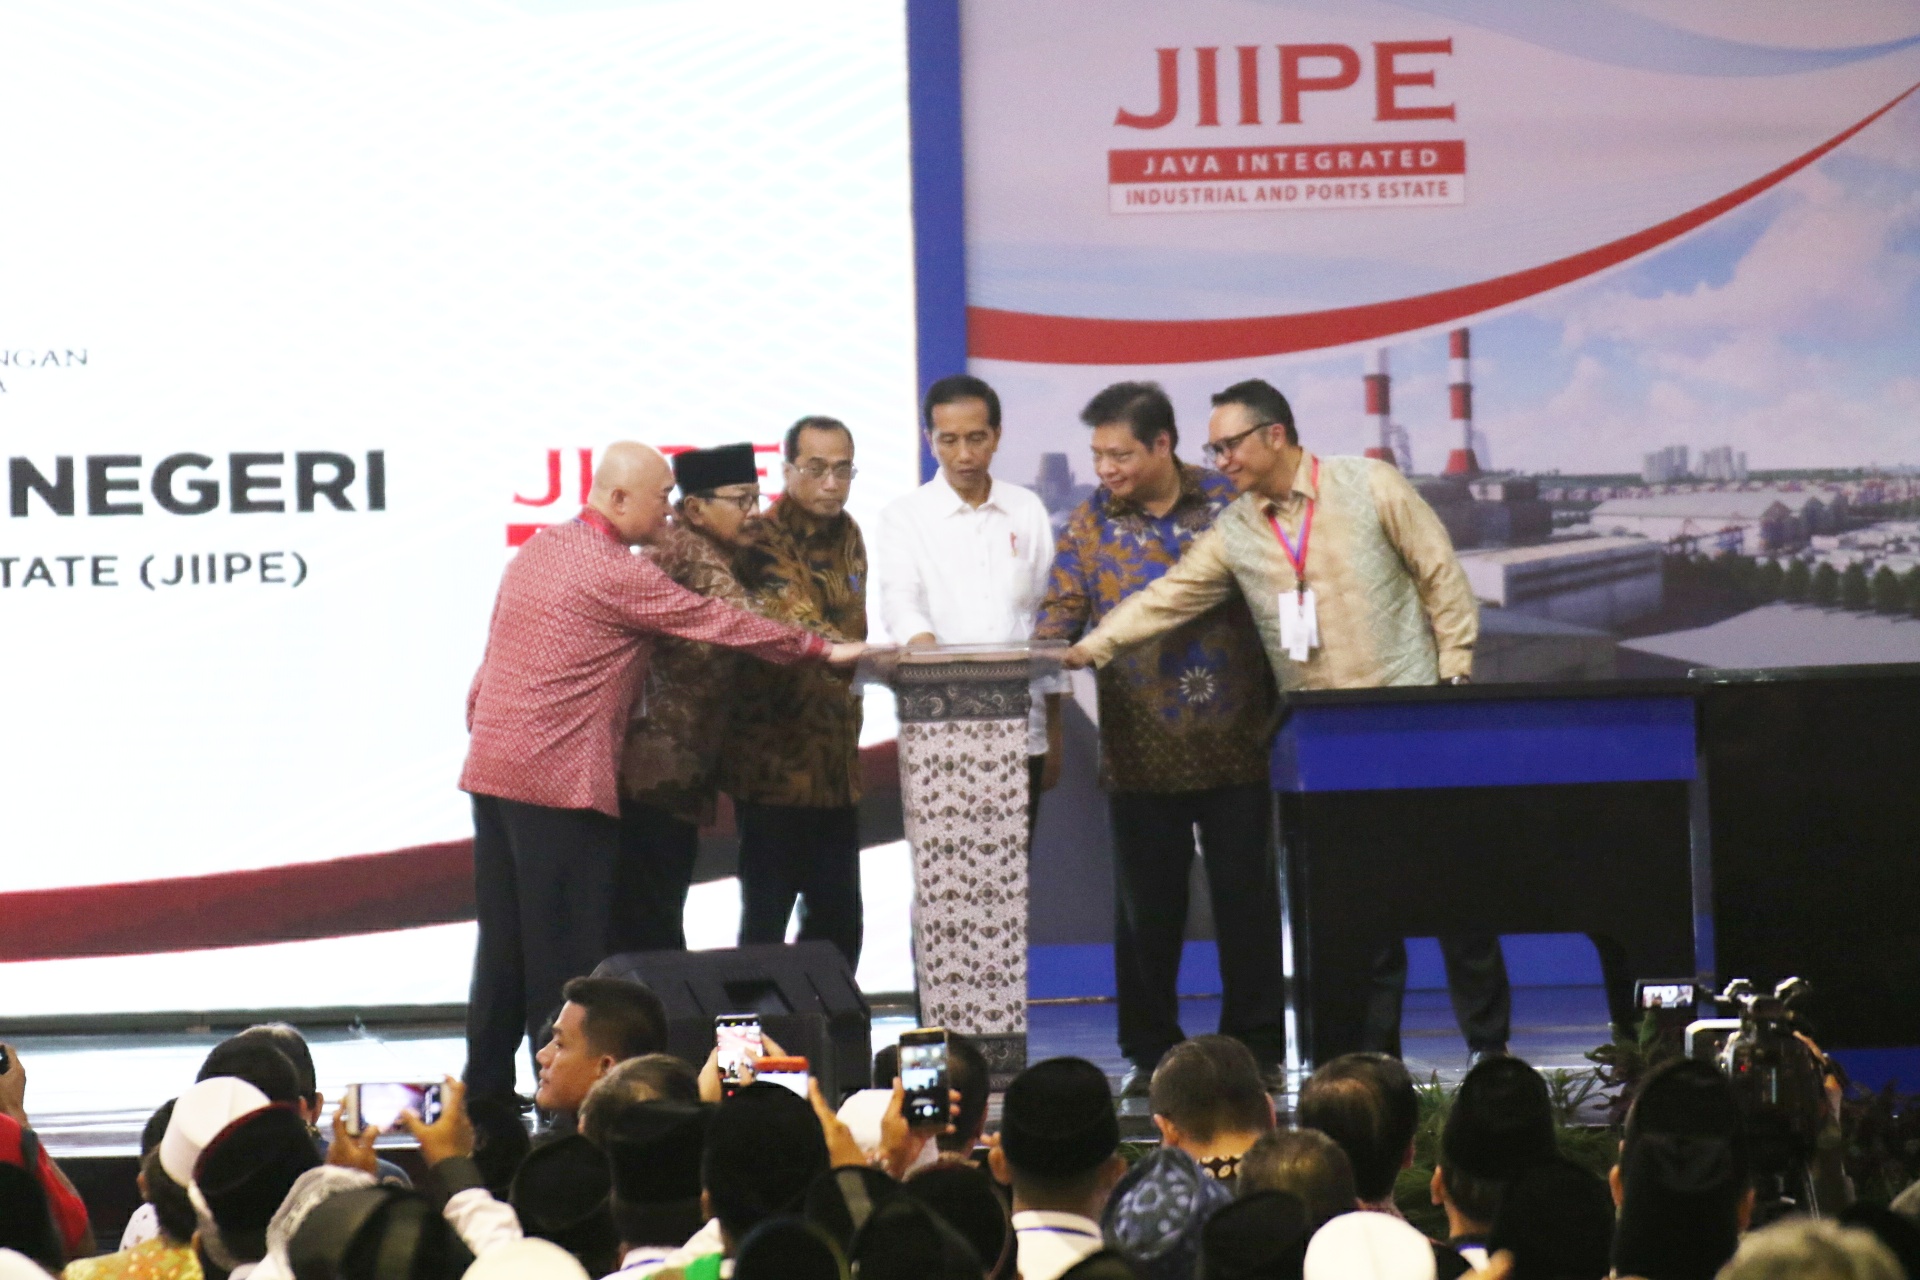 Presiden Jokowi saat saat meresmikan kawasan industri Java Integrated Industrial and Port Estate (JIIPE) di Gresik, Jawa Timur, Jumat, 9 Maret 2018. (Foto: Humas Pemprov Jatim)